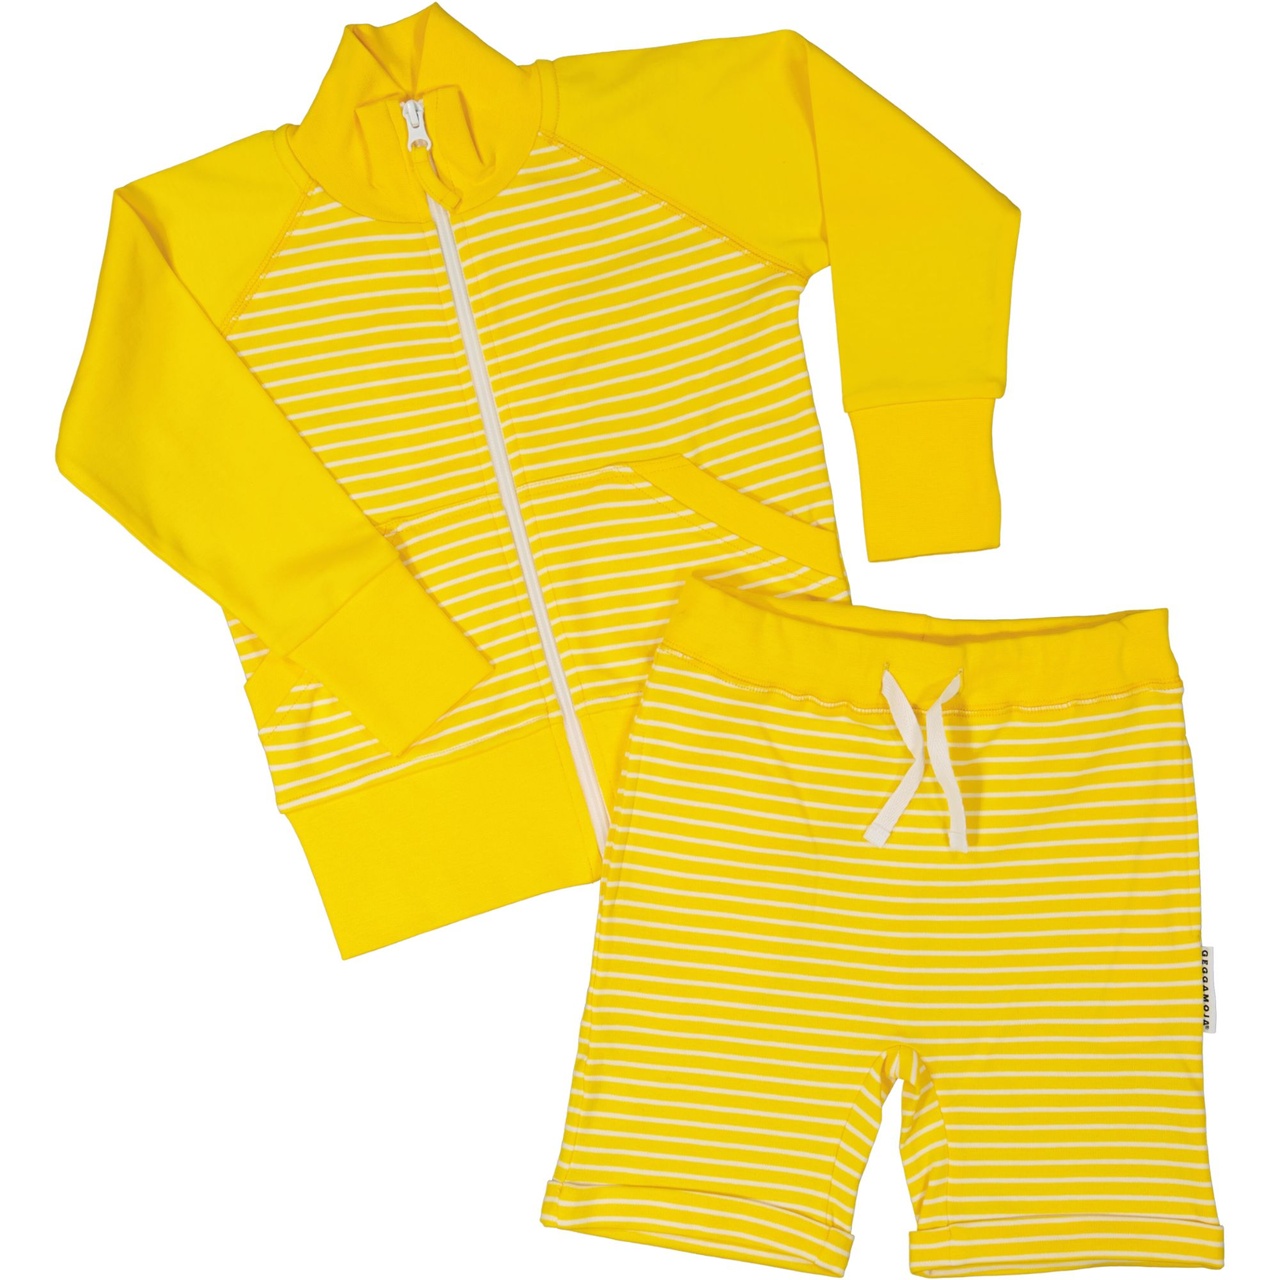 Zip sweater Yellow/white  62/68